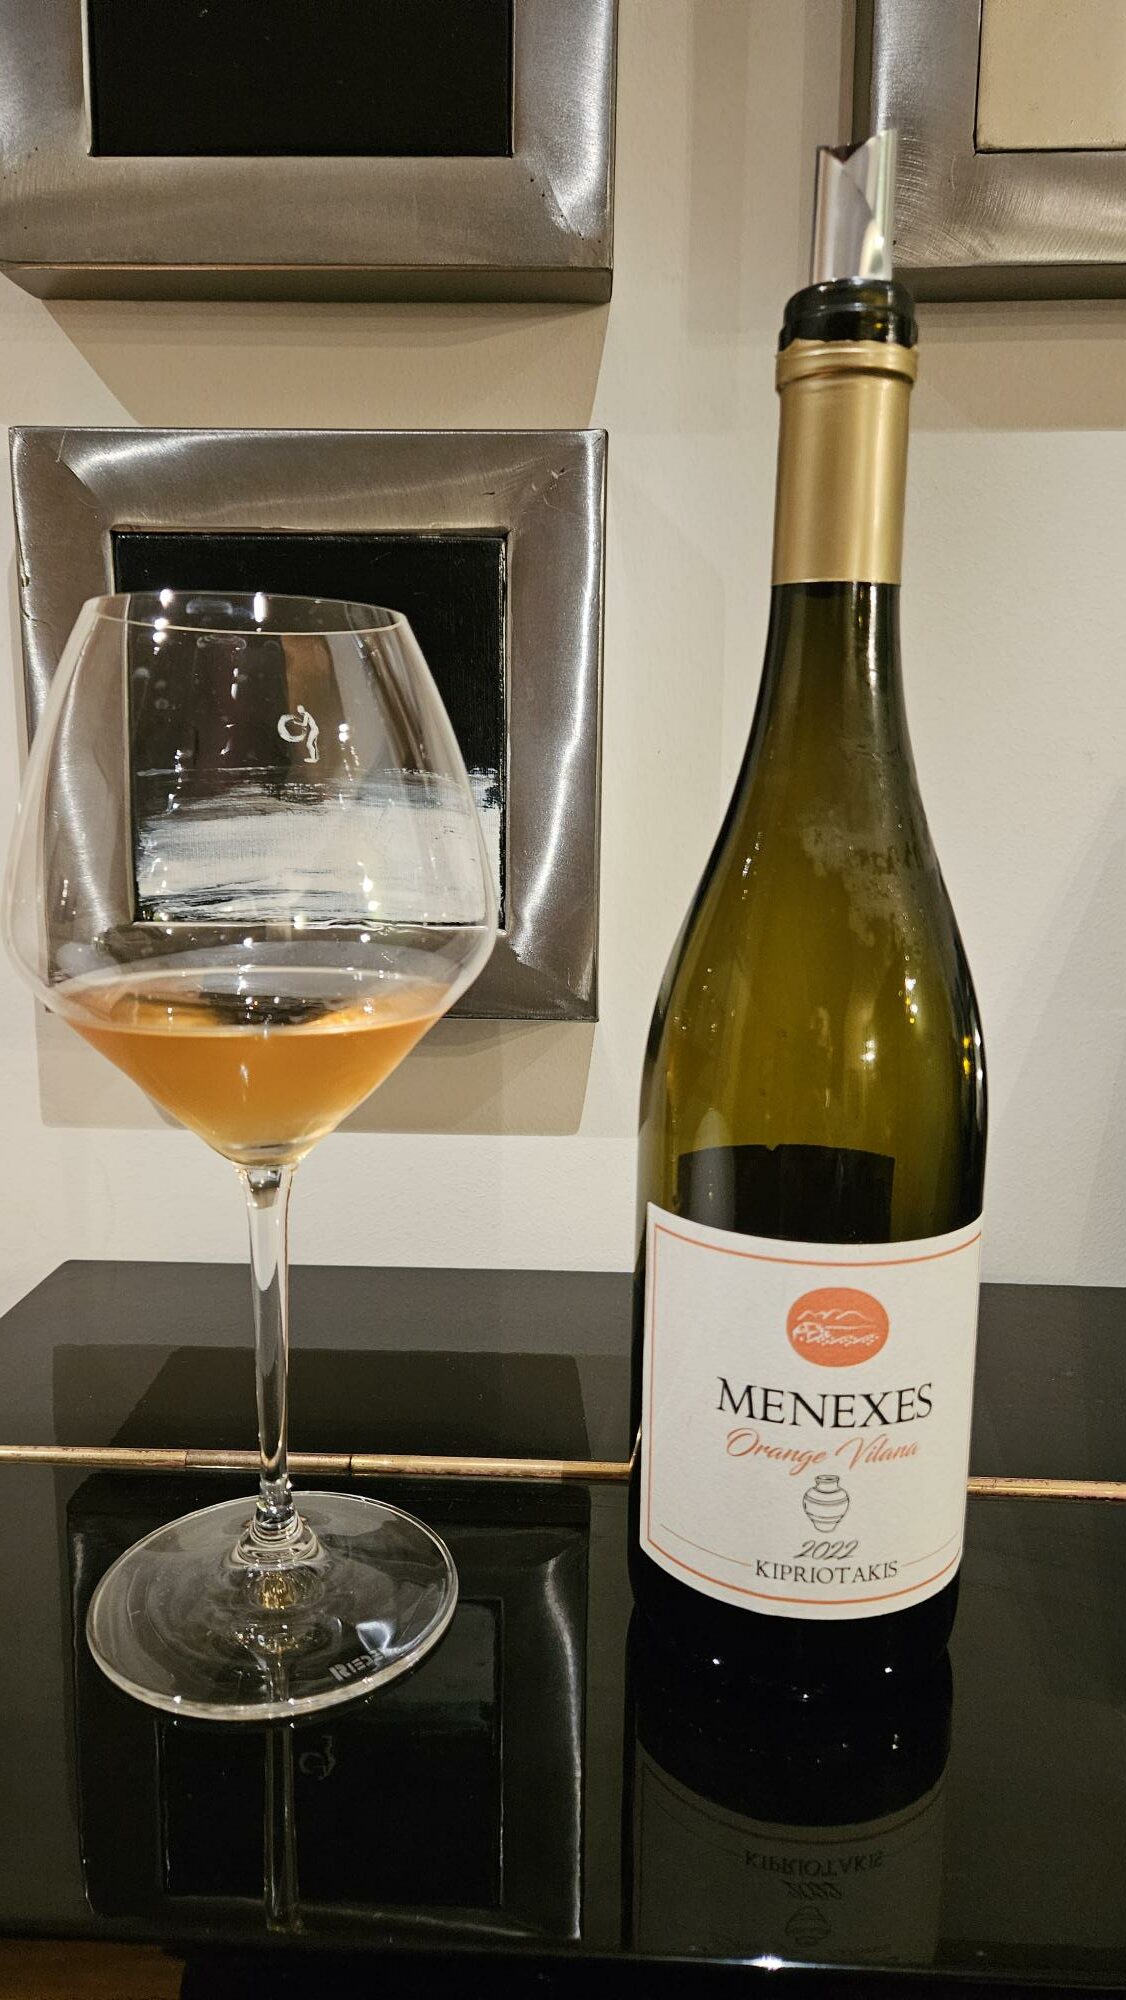 Orange Vilana 2022 – Menexes Wines, Κυπριωτάκης